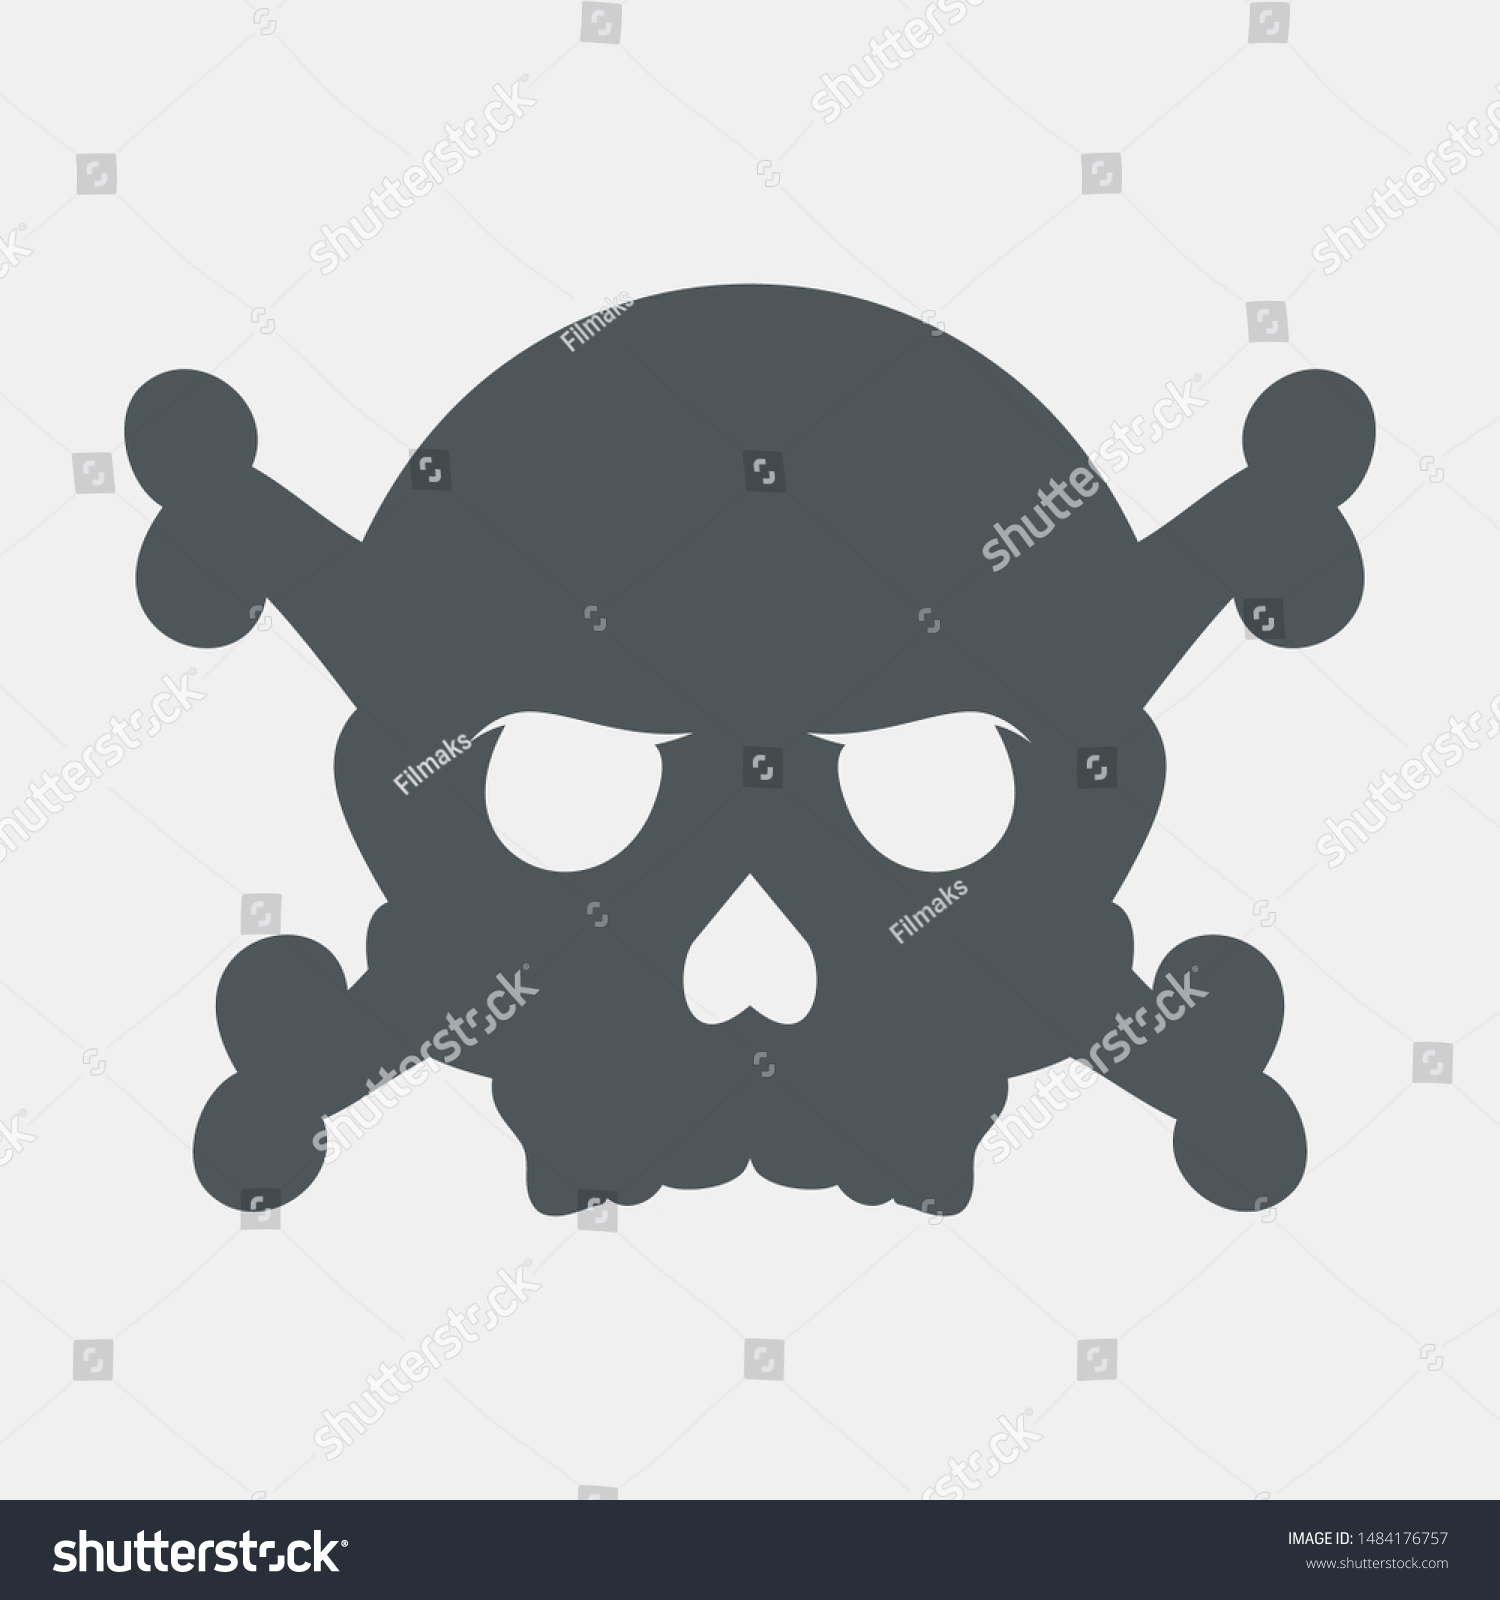 SVG of Skull quality vector illustration cut svg